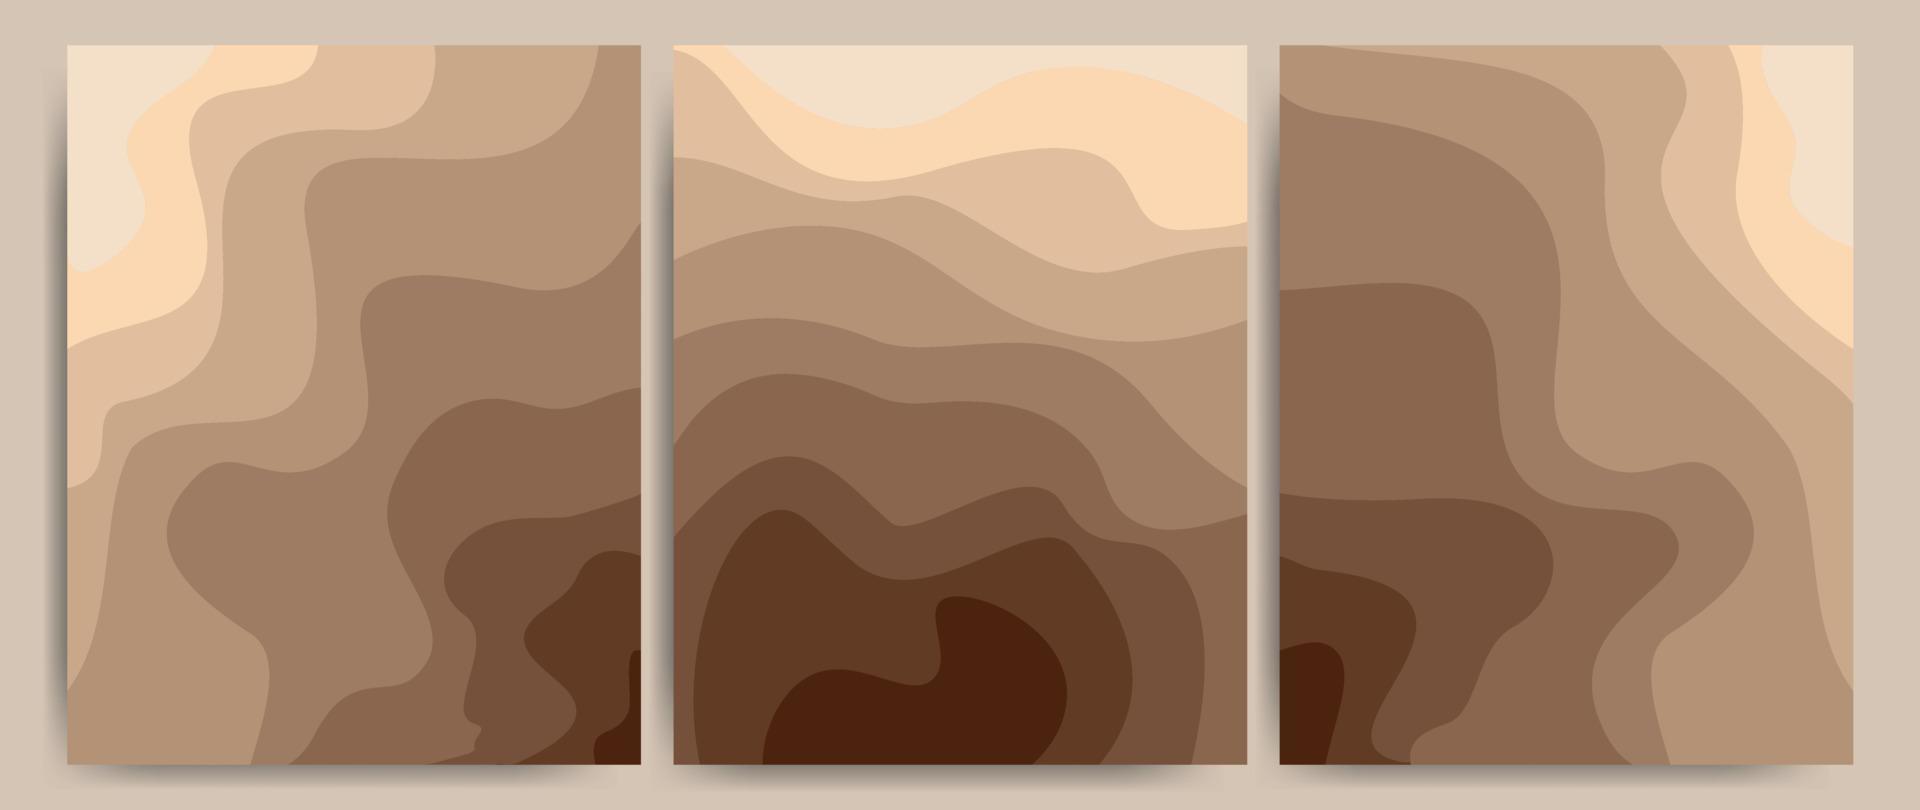 abstracte banner kunst achtergrond zand op strand, kust of woestijn met barchan en duinen beige kleur. sjabloon kaart zand textuur met patroon golvende lijnen. geweldig voor covers, stof prints.vector afbeelding. vector